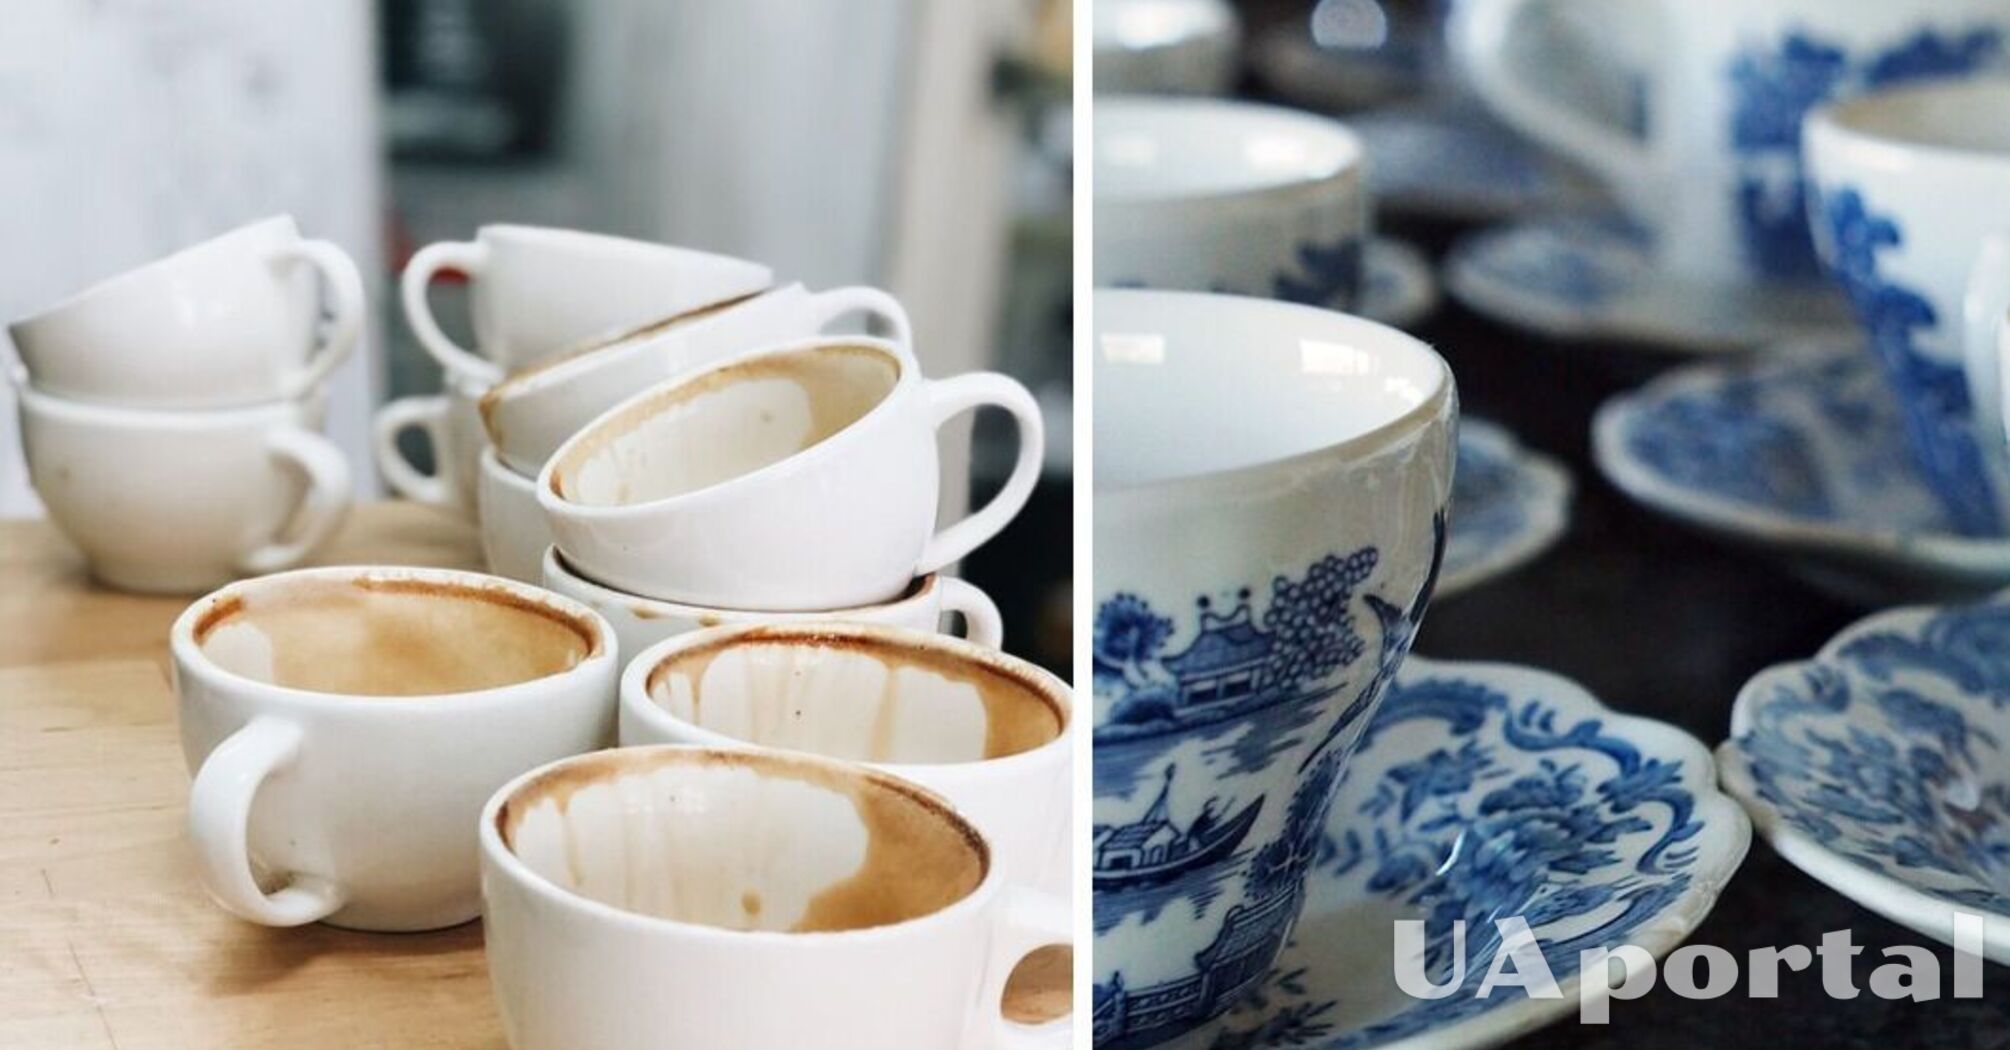 Фахівці підказали, як легко та швидко відмити плями від чаю з чашок